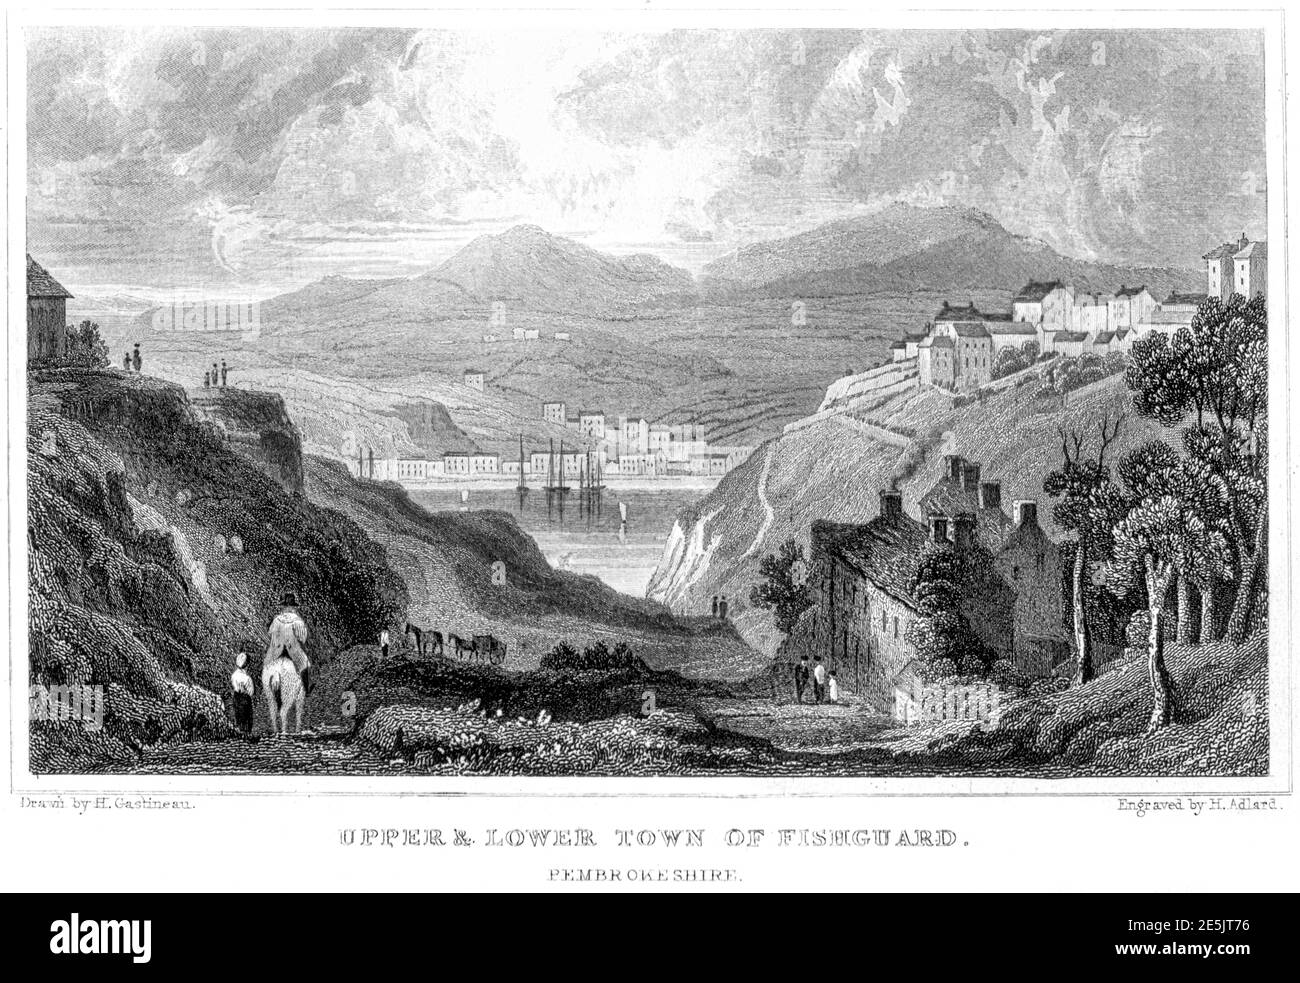 Eine Gravur von Upper & Lower Town of Fishguard, Pembrokeshire gescannt mit hoher Auflösung aus einem Buch im Jahr 1854 veröffentlicht. Für urheberrechtlich frei gehalten. Stockfoto